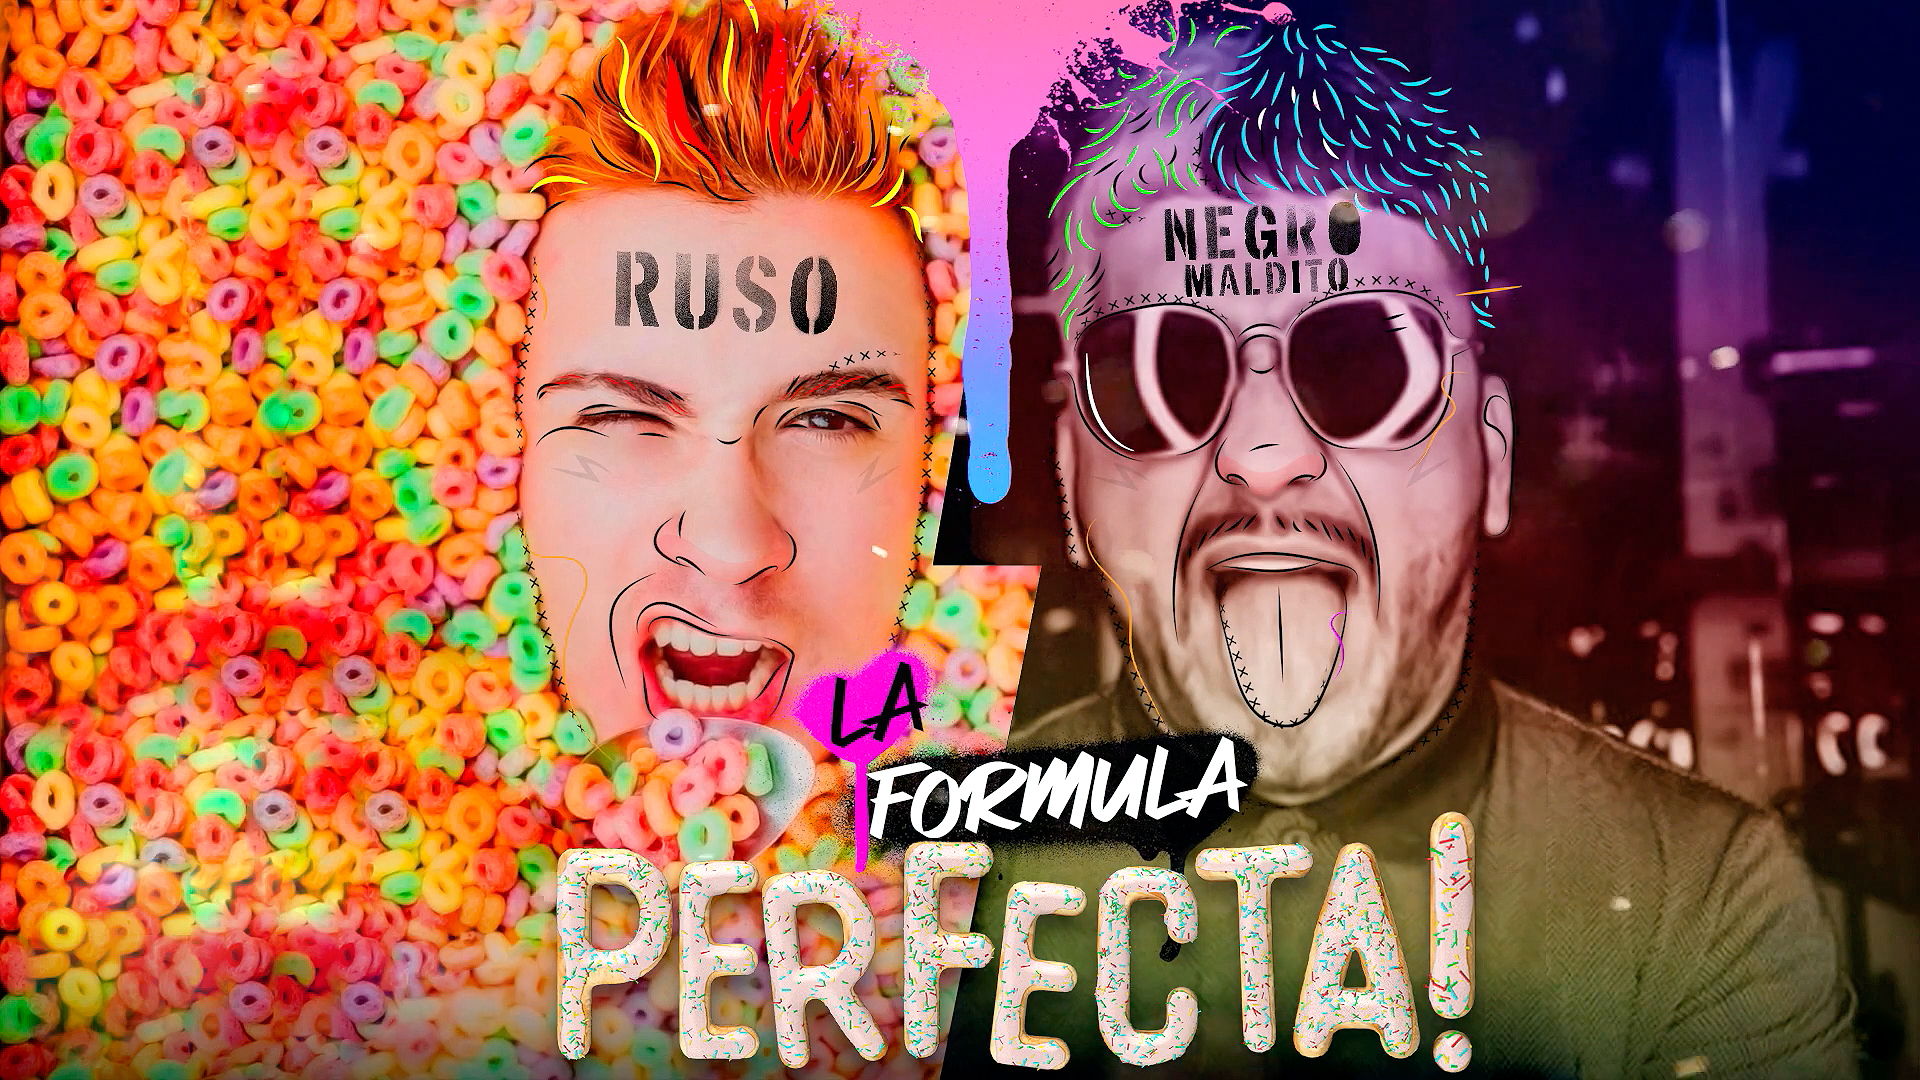 Ruso_TV presenta «La Fórmula Perfecta» sencillo en colaboración con «El Negro Maldito»